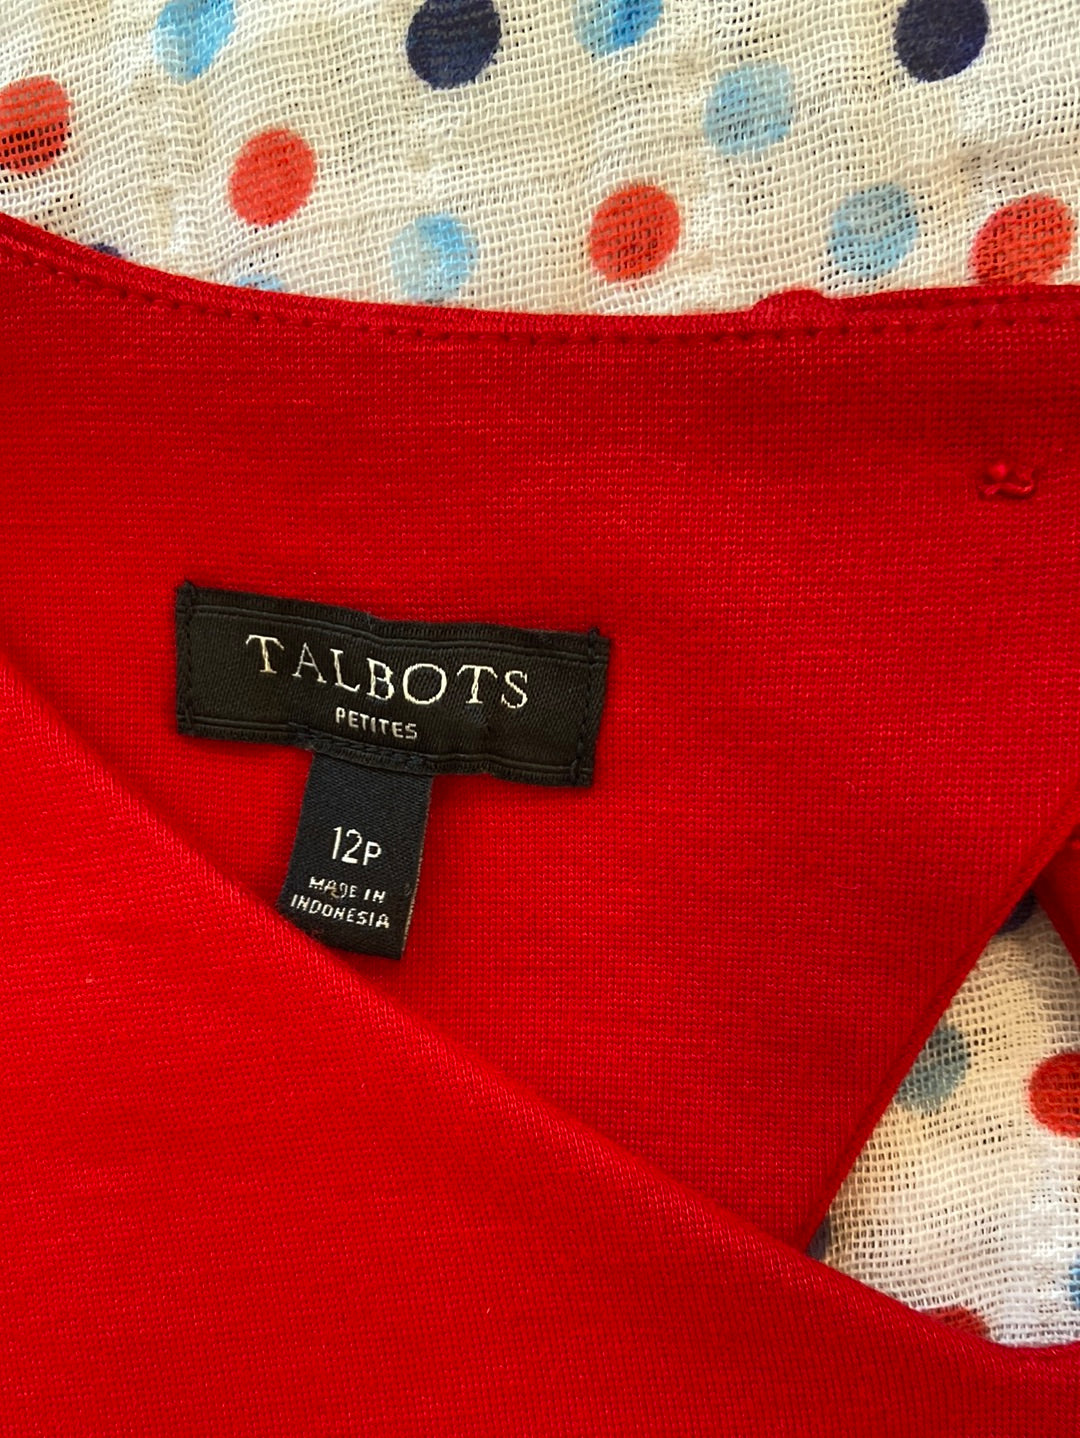 RAVISHING RED Talbots Size 12P